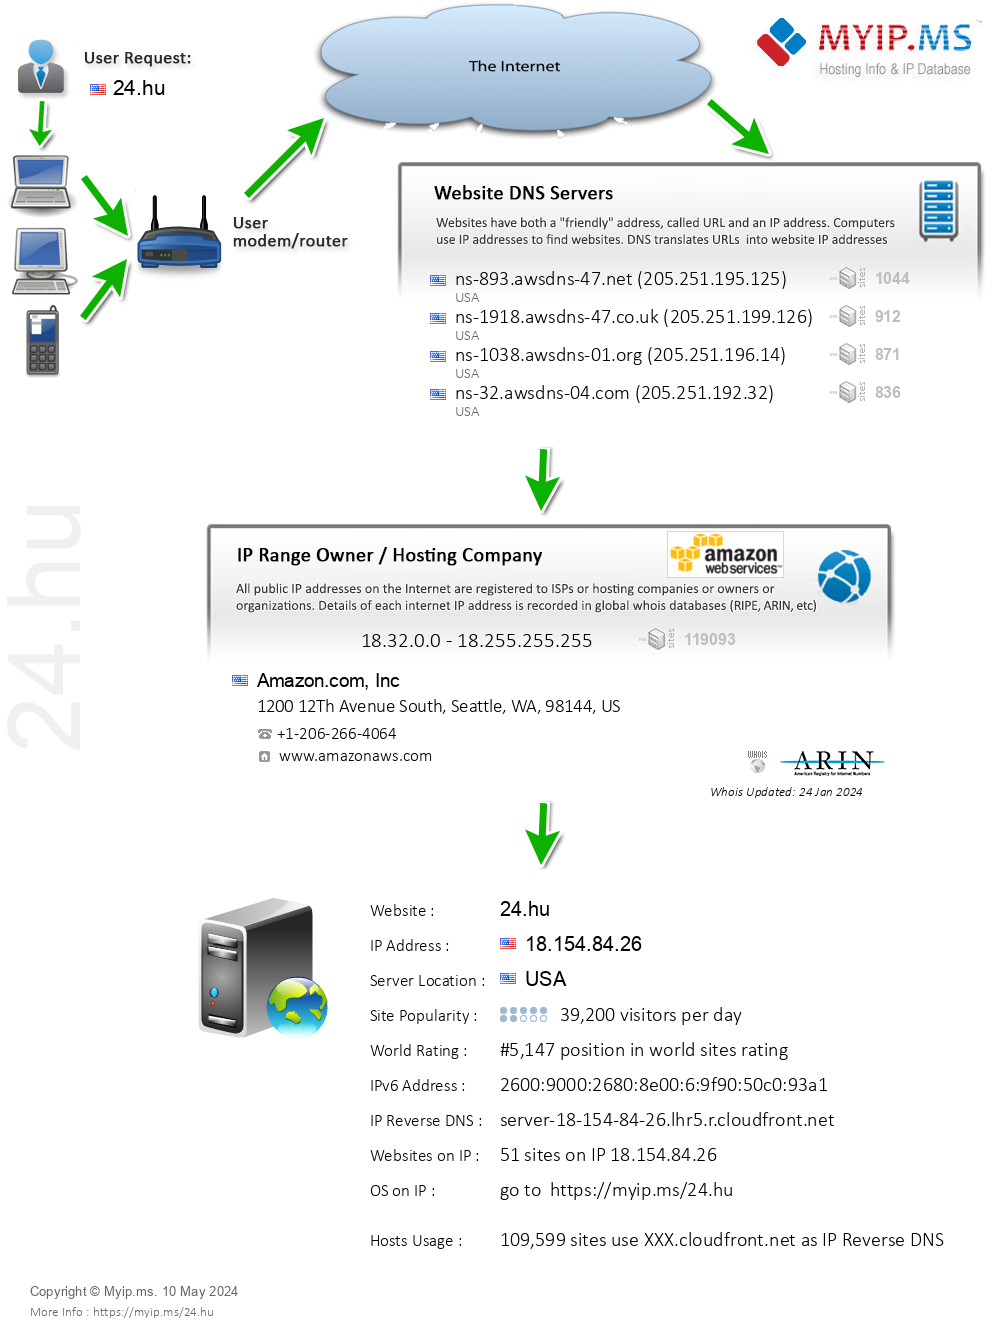 24.hu - Website Hosting Visual IP Diagram